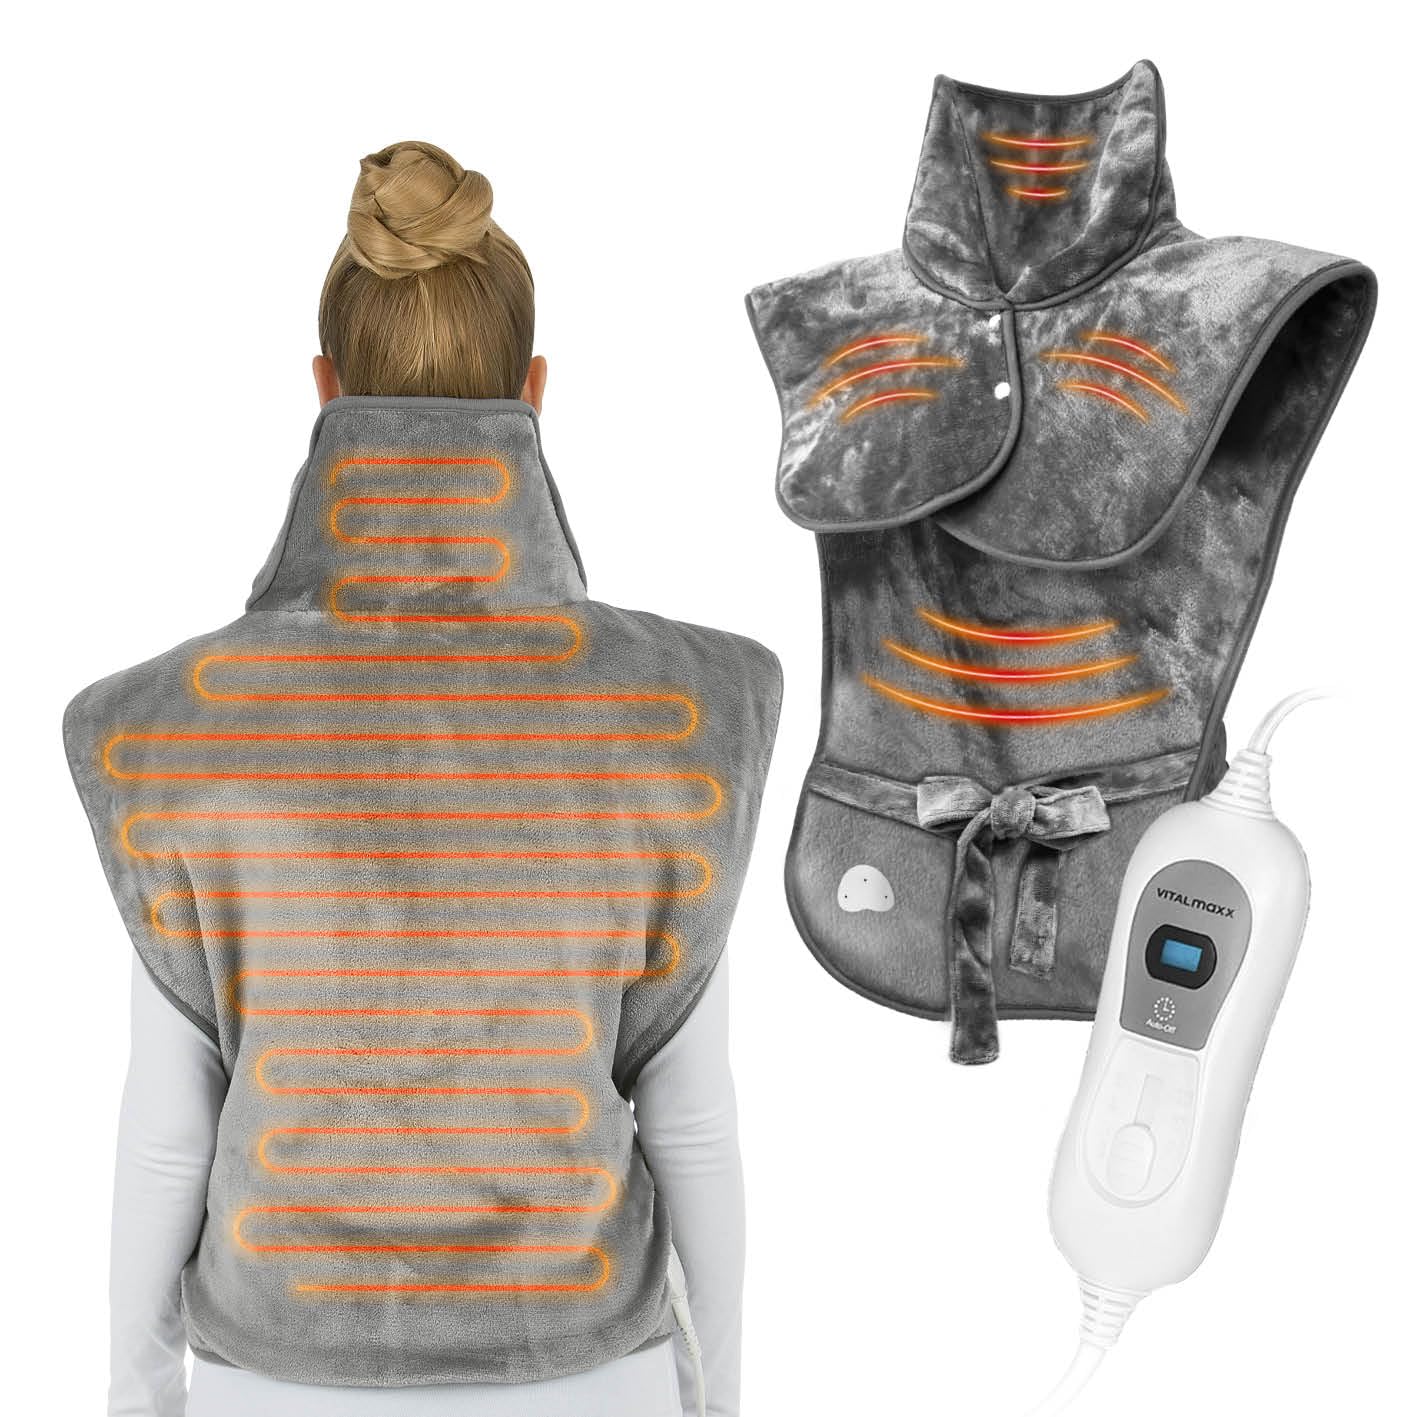 VITALmaxx Rücken- & Schulterheizdecke mit Abschaltautomatik | Wohlige Wärme für Schultern und den gesamten Rücken | Optimaler Sitz | Mikrofaser max. 100W [grau]